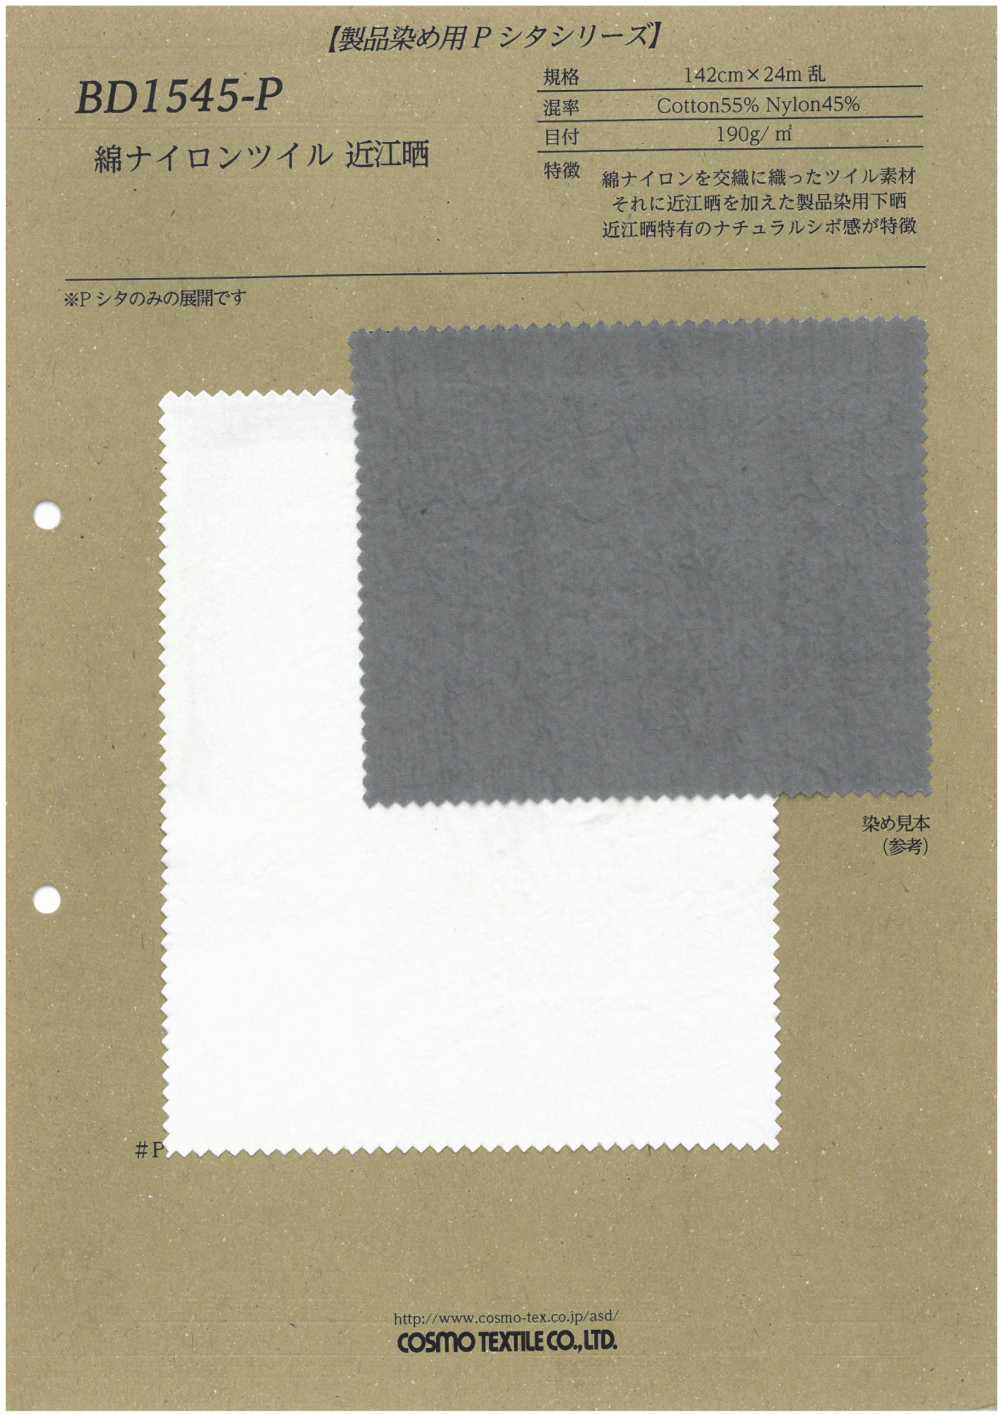 BD1545-P Baumwoll-Nylon-Twill Omi Gebleicht[Textilgewebe] COSMO TEXTILE